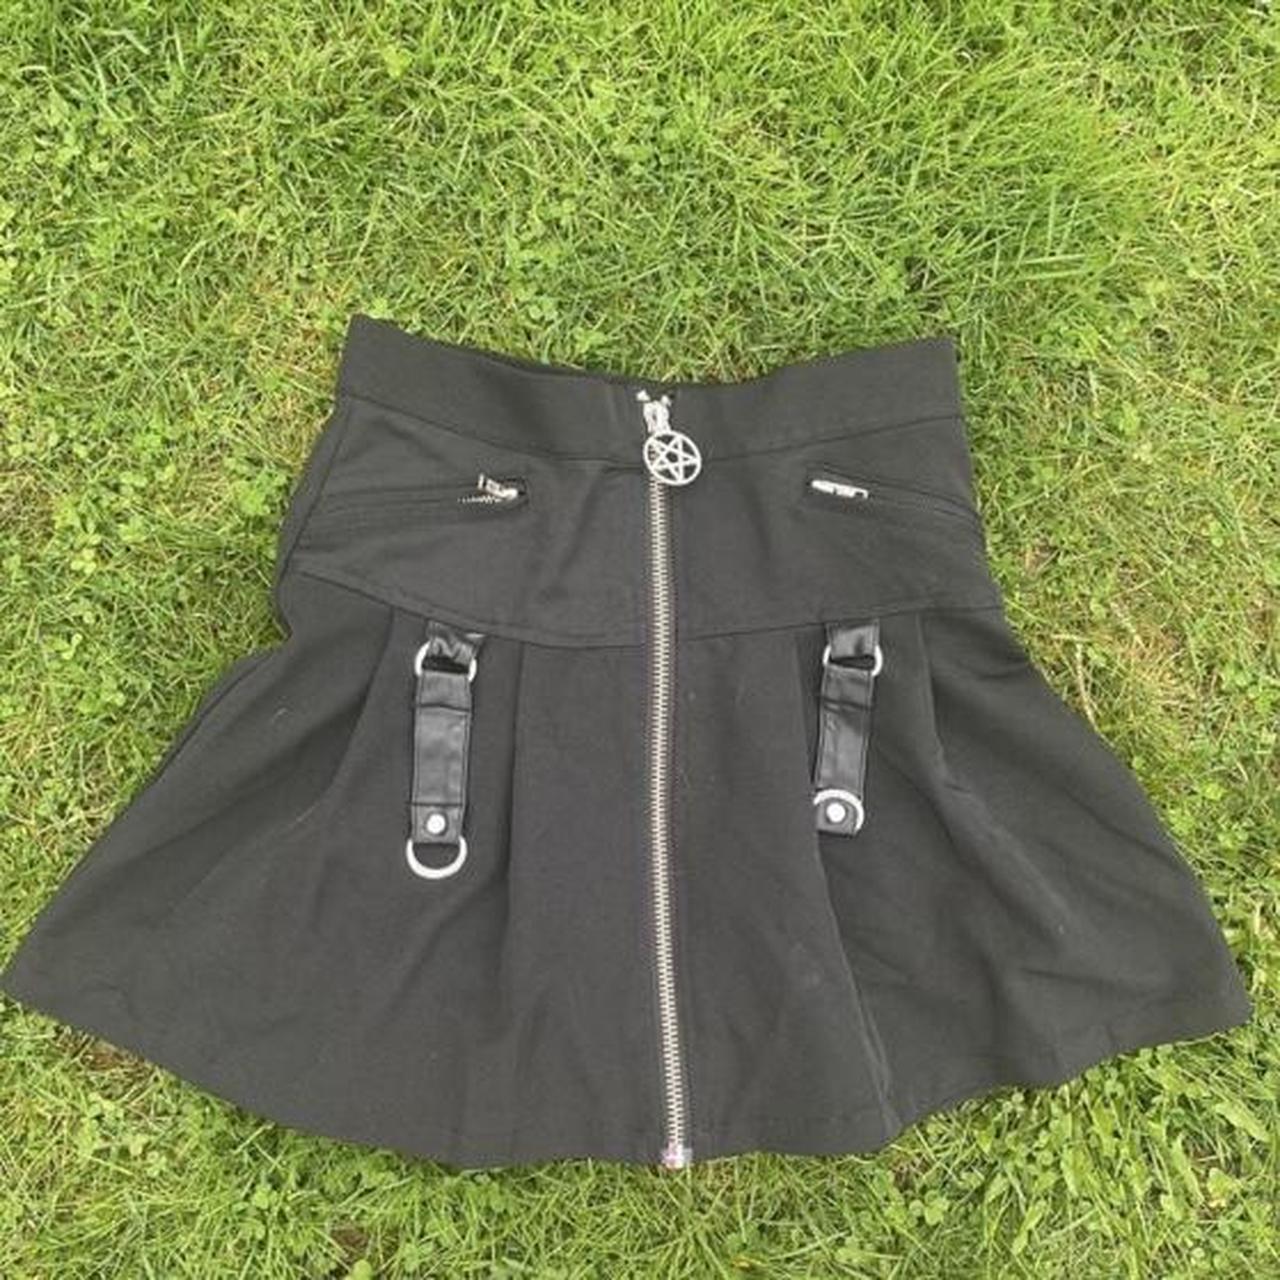 Product Image 1 - KILLSTAR Pentagram Bondage Cargo Skirt

Marked